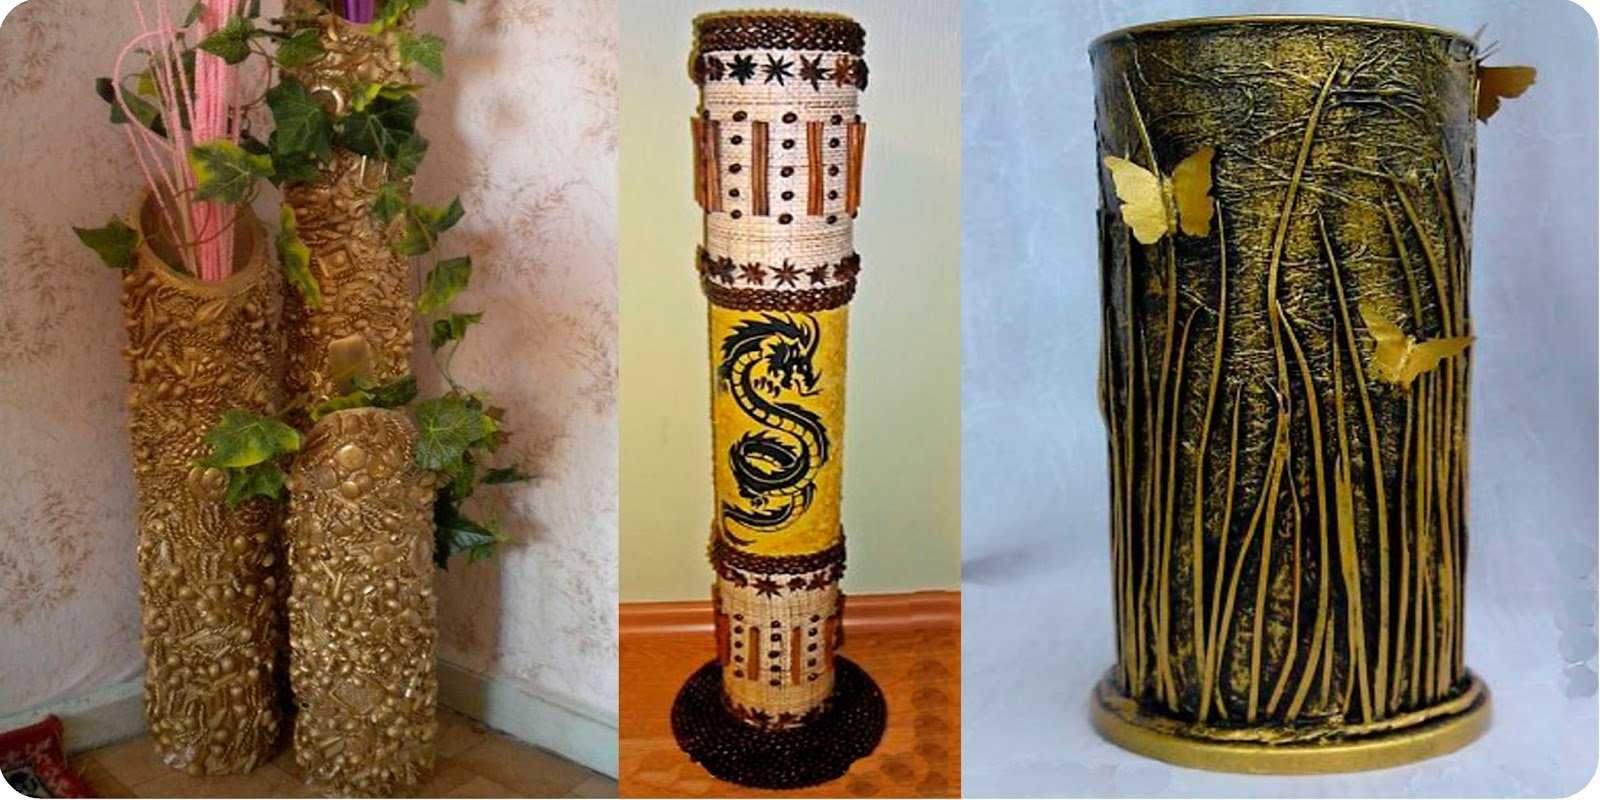 Напольные вазы (39 фото): выбираем для интерьера декоративные высокие и большие керамические  вазы для цветов, плетеные и стеклянные